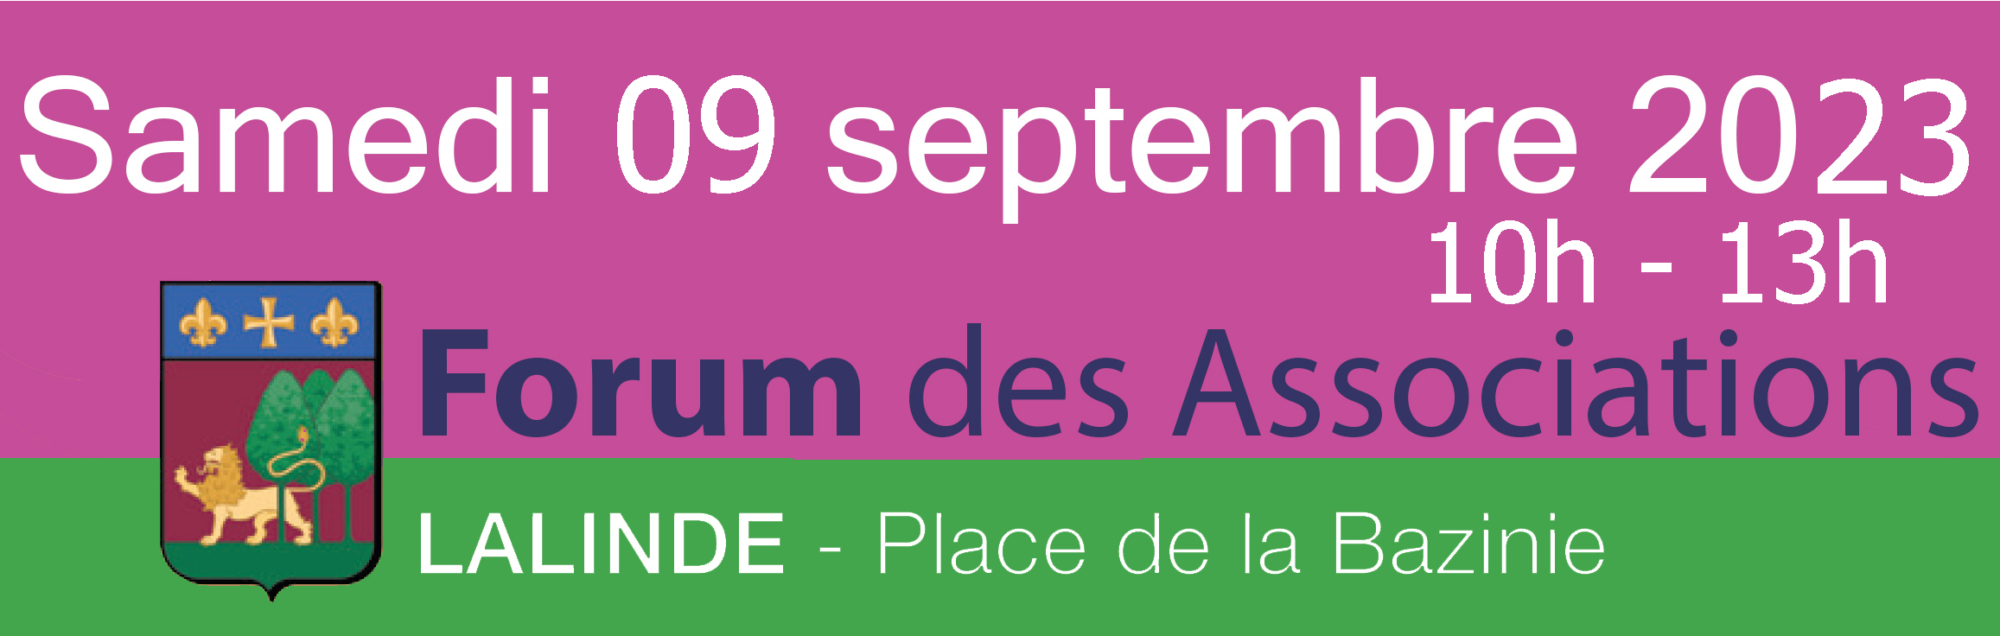 forum des associations lalinde 2023 septembre 09